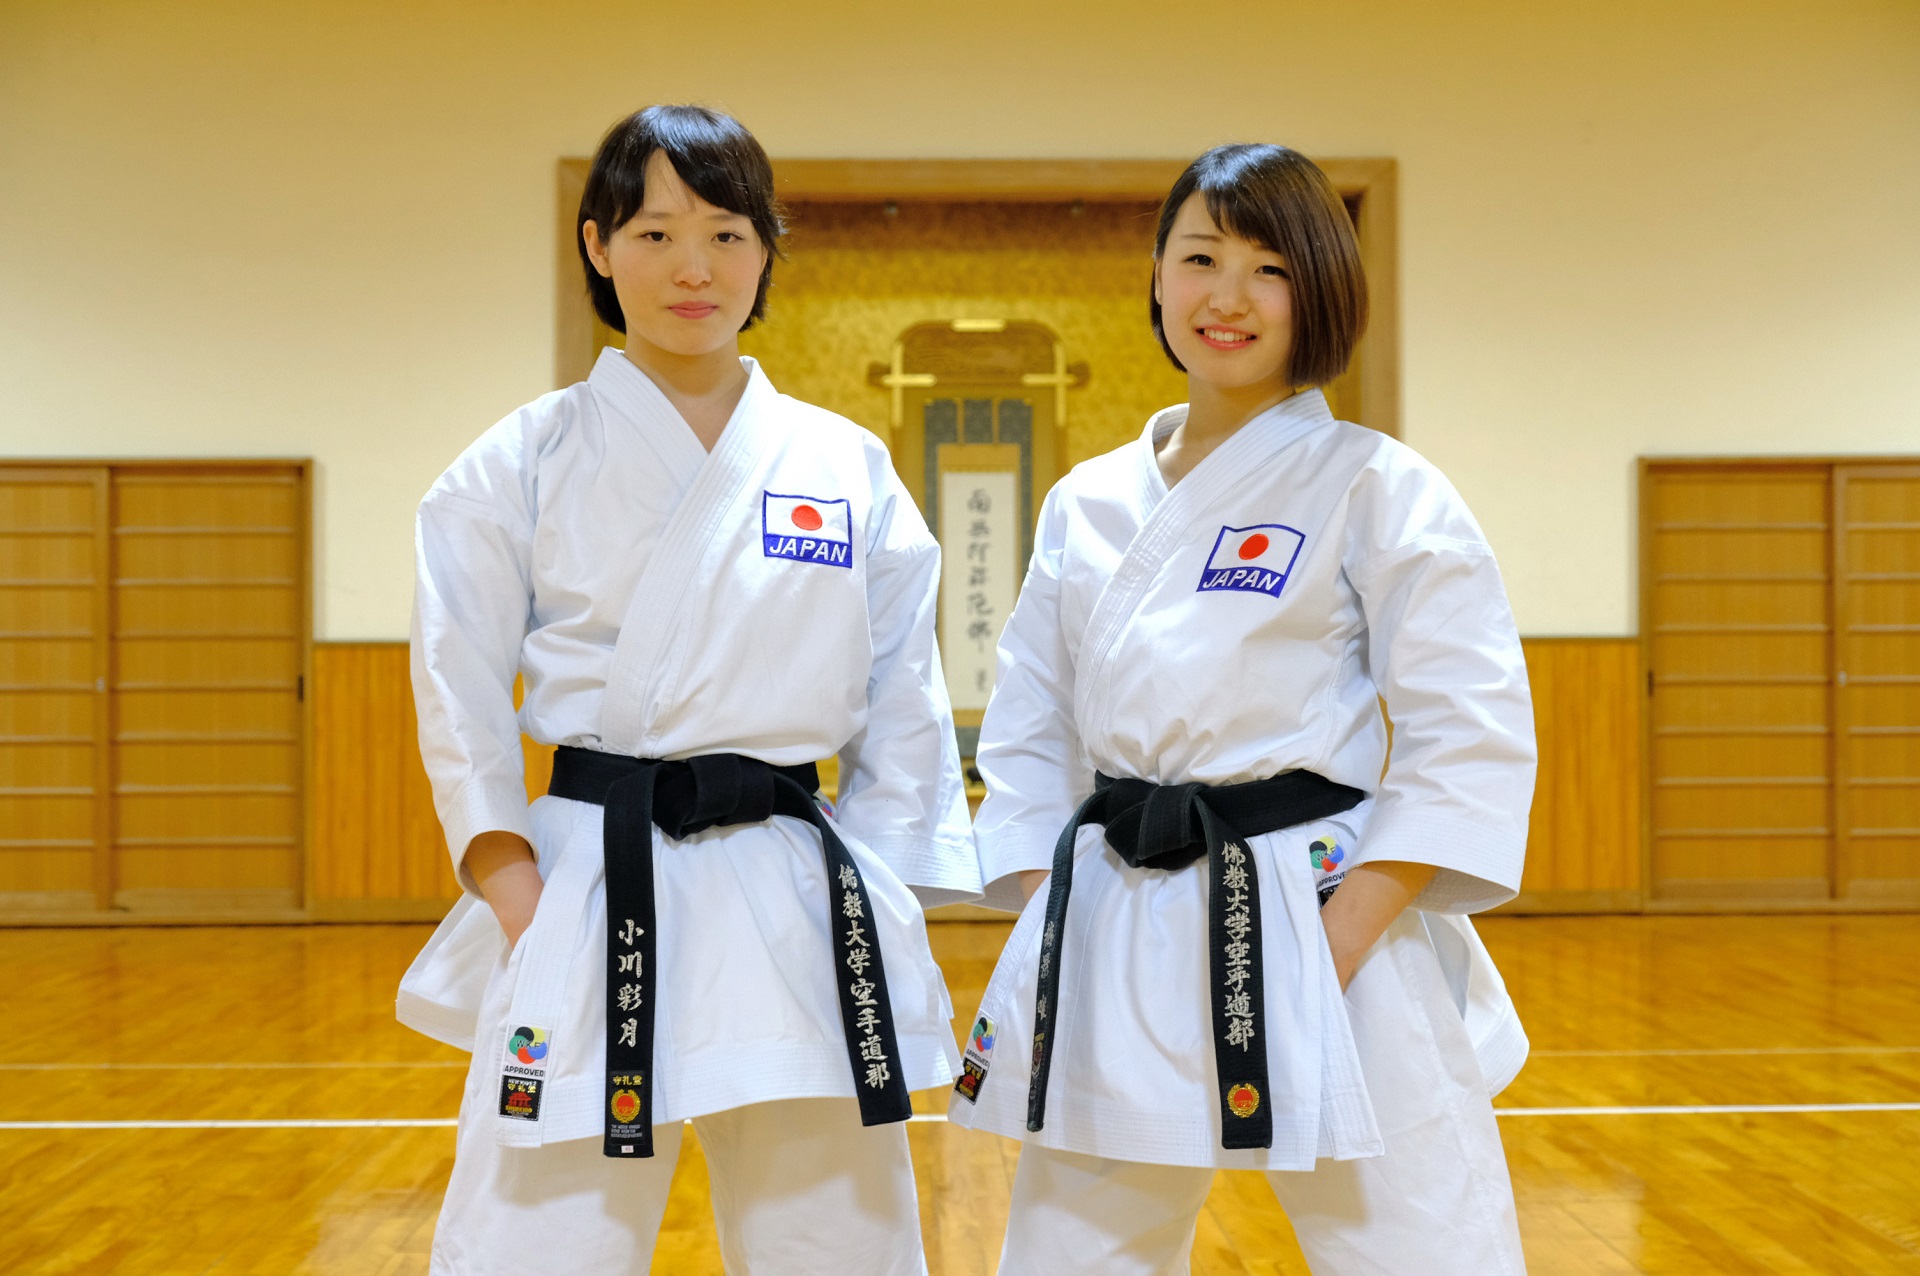 佛教大学空手道部の2選手が日本代表に選出 -- 東アジア空手道選手権大会（5月17日～21日・マカオ）に出場